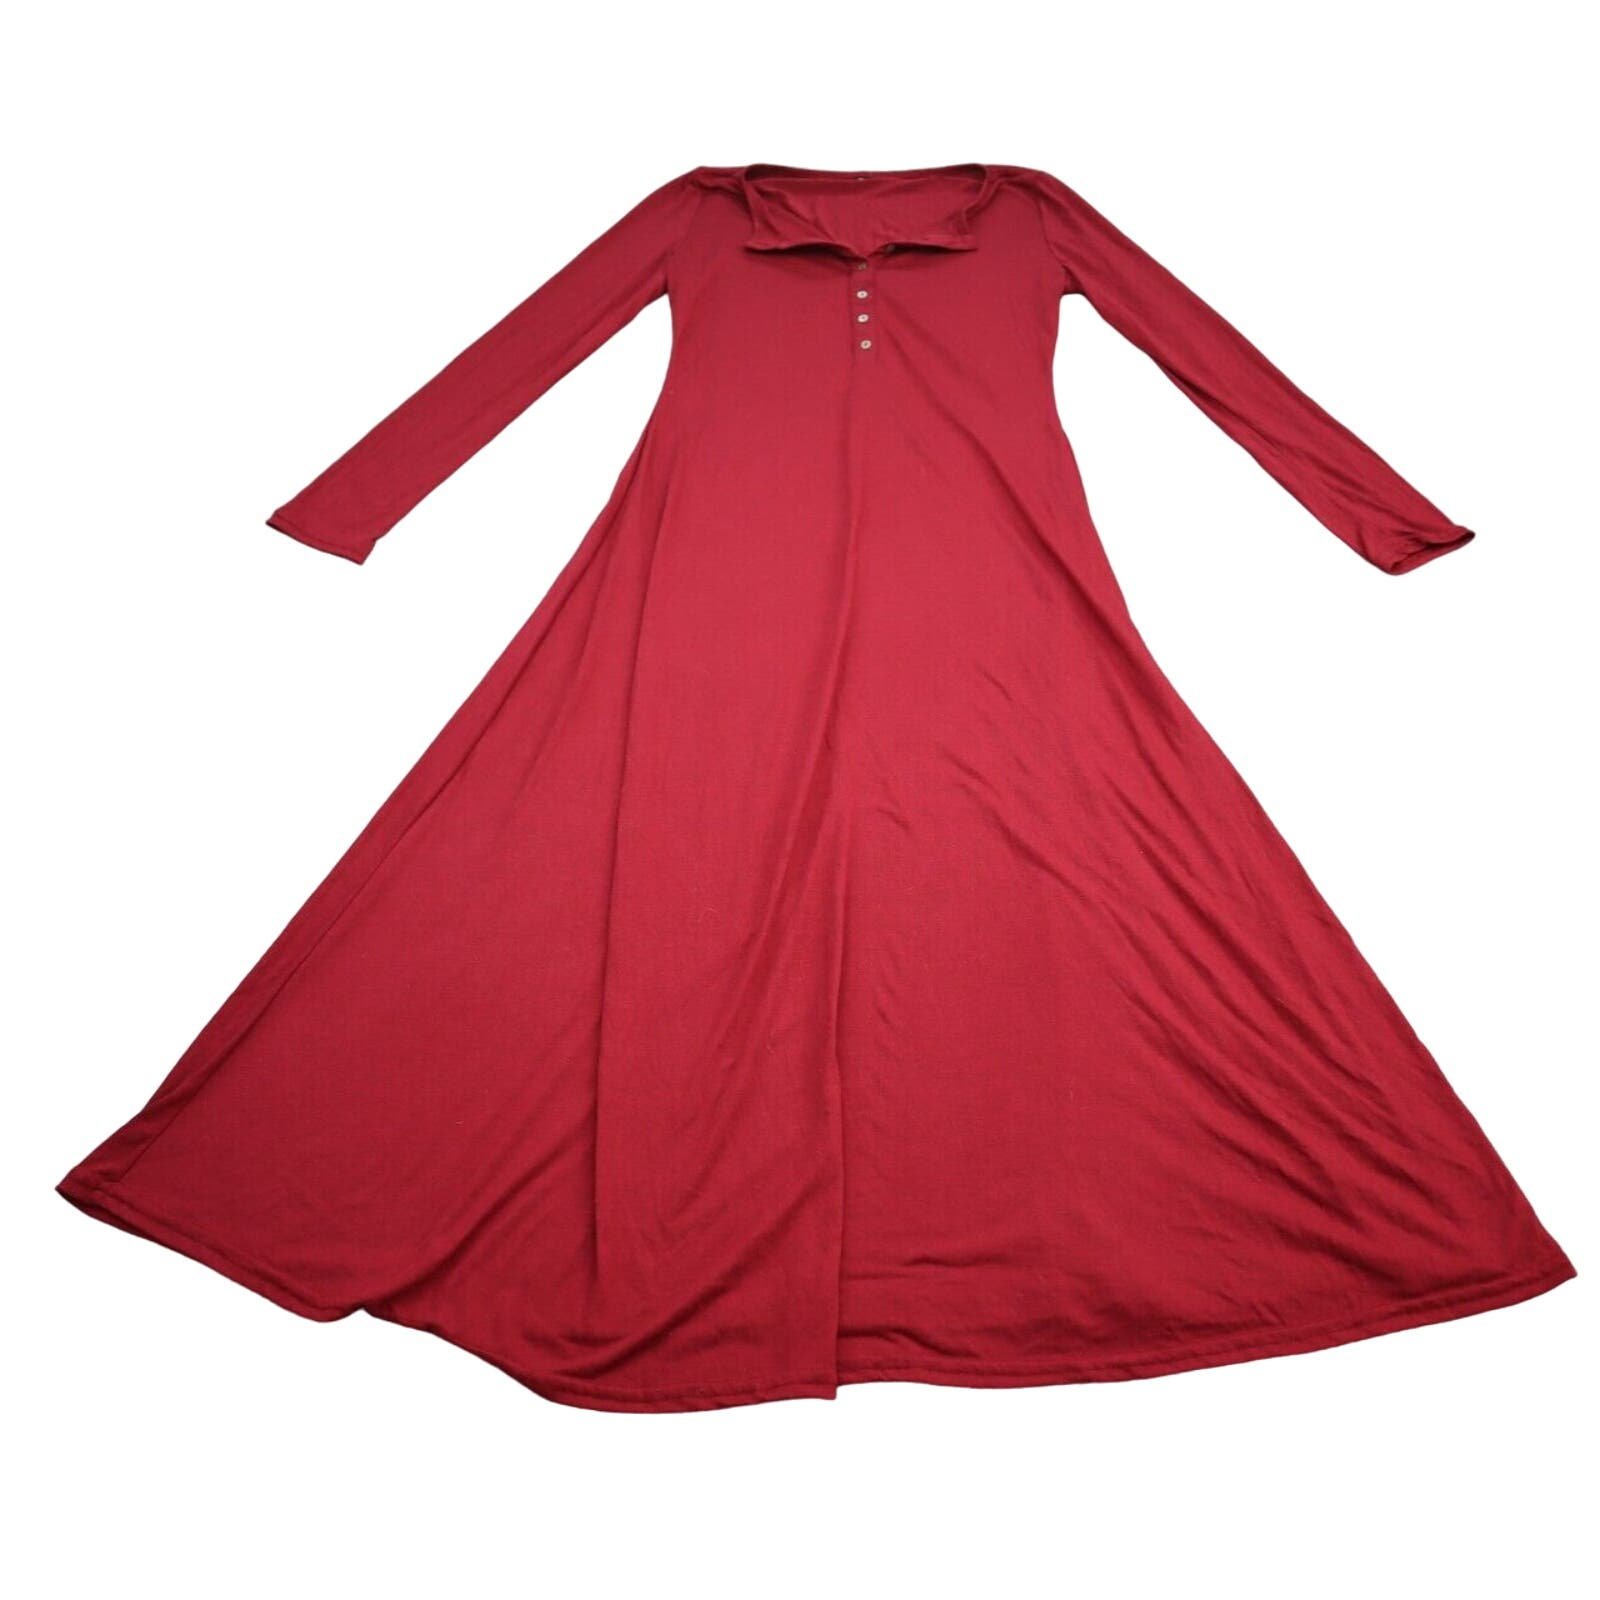 Popular Womens Dress Medium Red Lightweight Casual Long